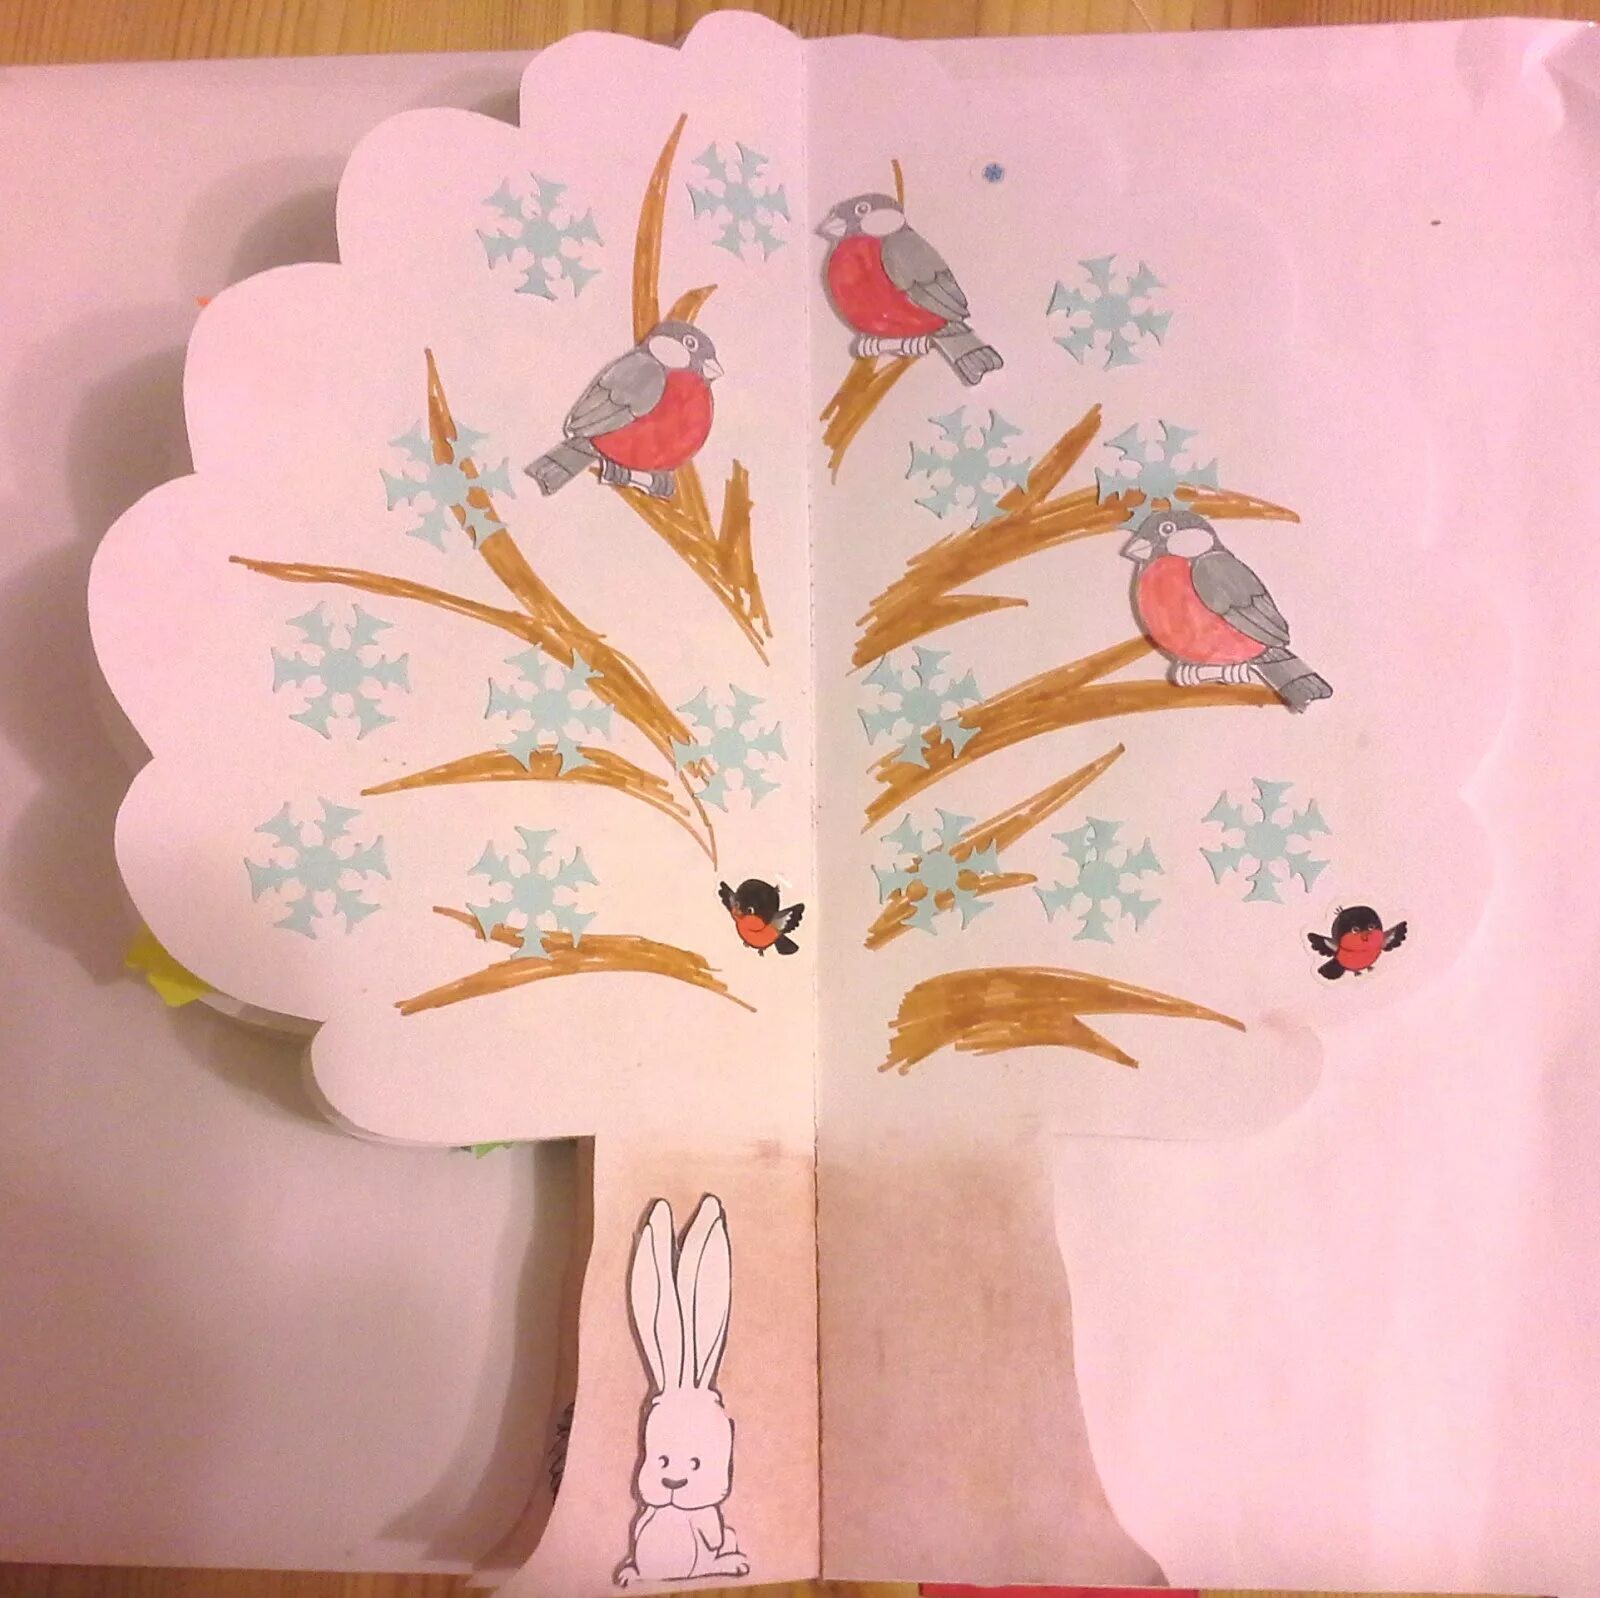 Книга в форме дерева. Книжка времена года своими руками для детского сада. Книжка малышка в виде дерева. Оформление детской книги своими руками. Книжка малышка про деревья.